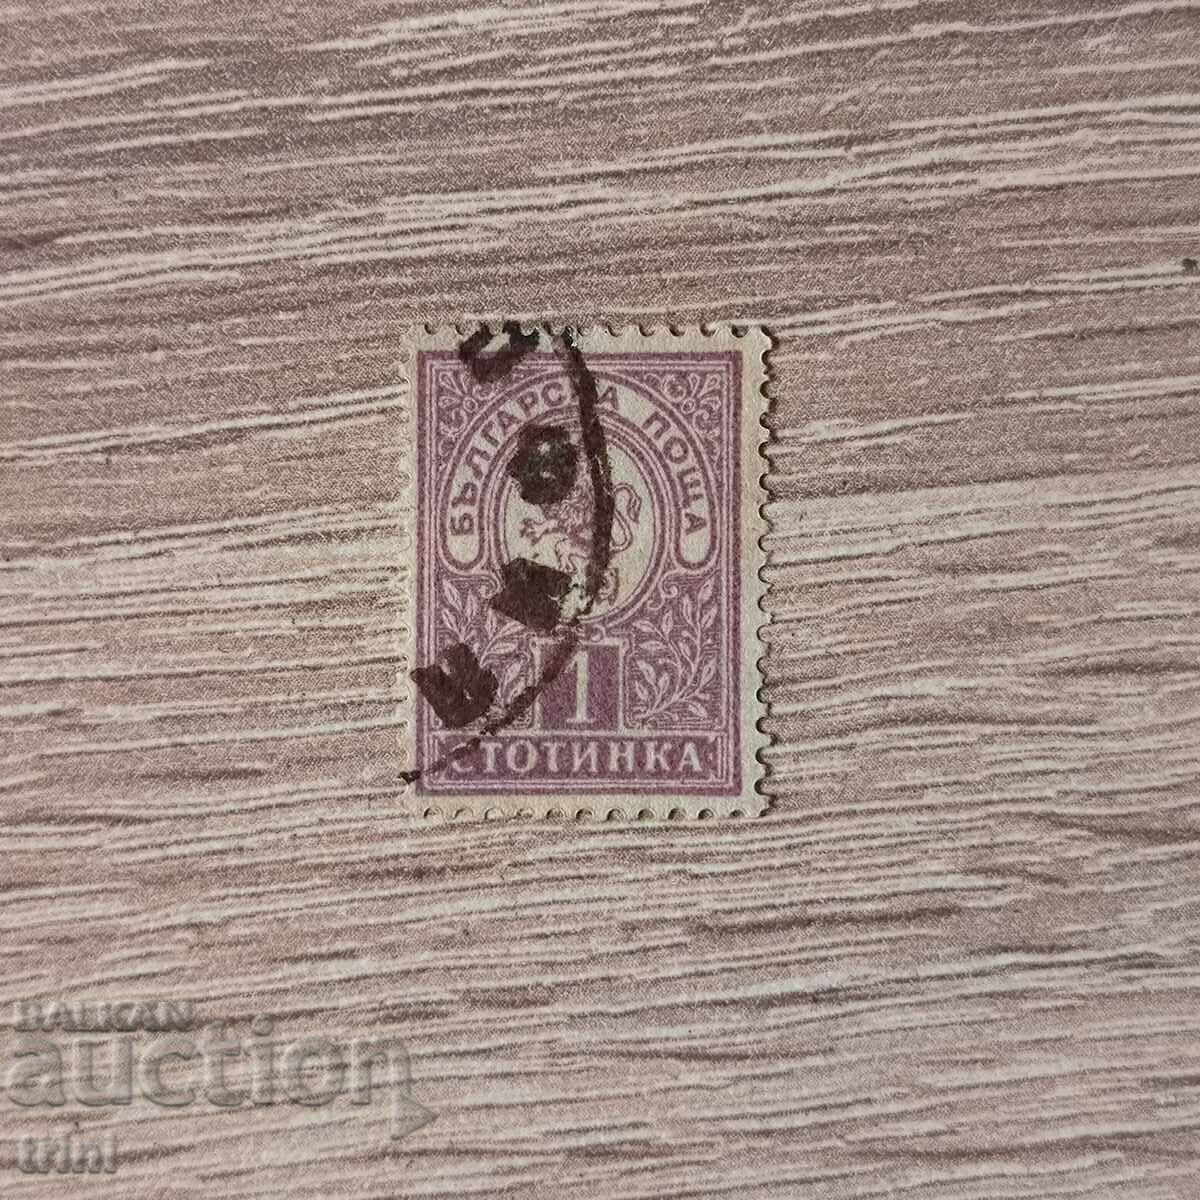 Bulgaria Little Lion 1889 1 cent